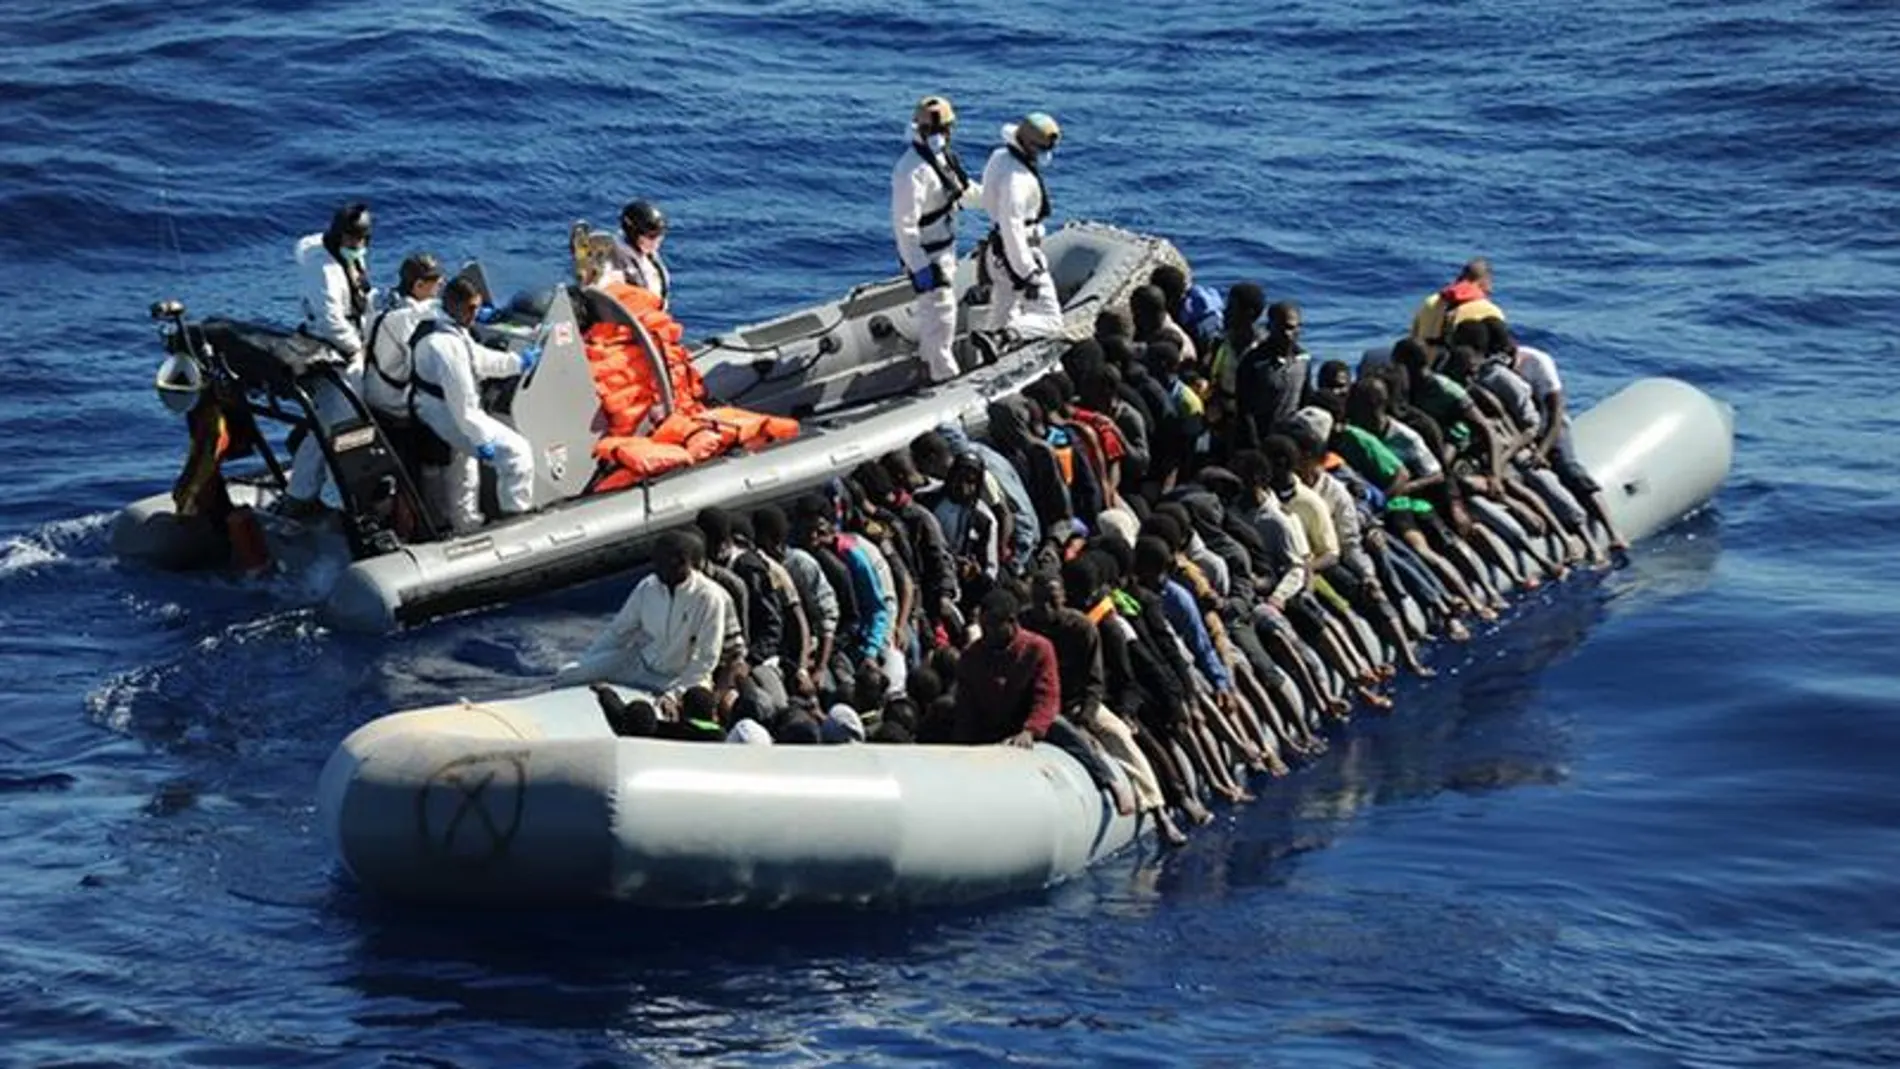 La fragata española Reina Sofía rescató ayer tres embarcaciones que navegaban a la deriva frente a las costas de Libia